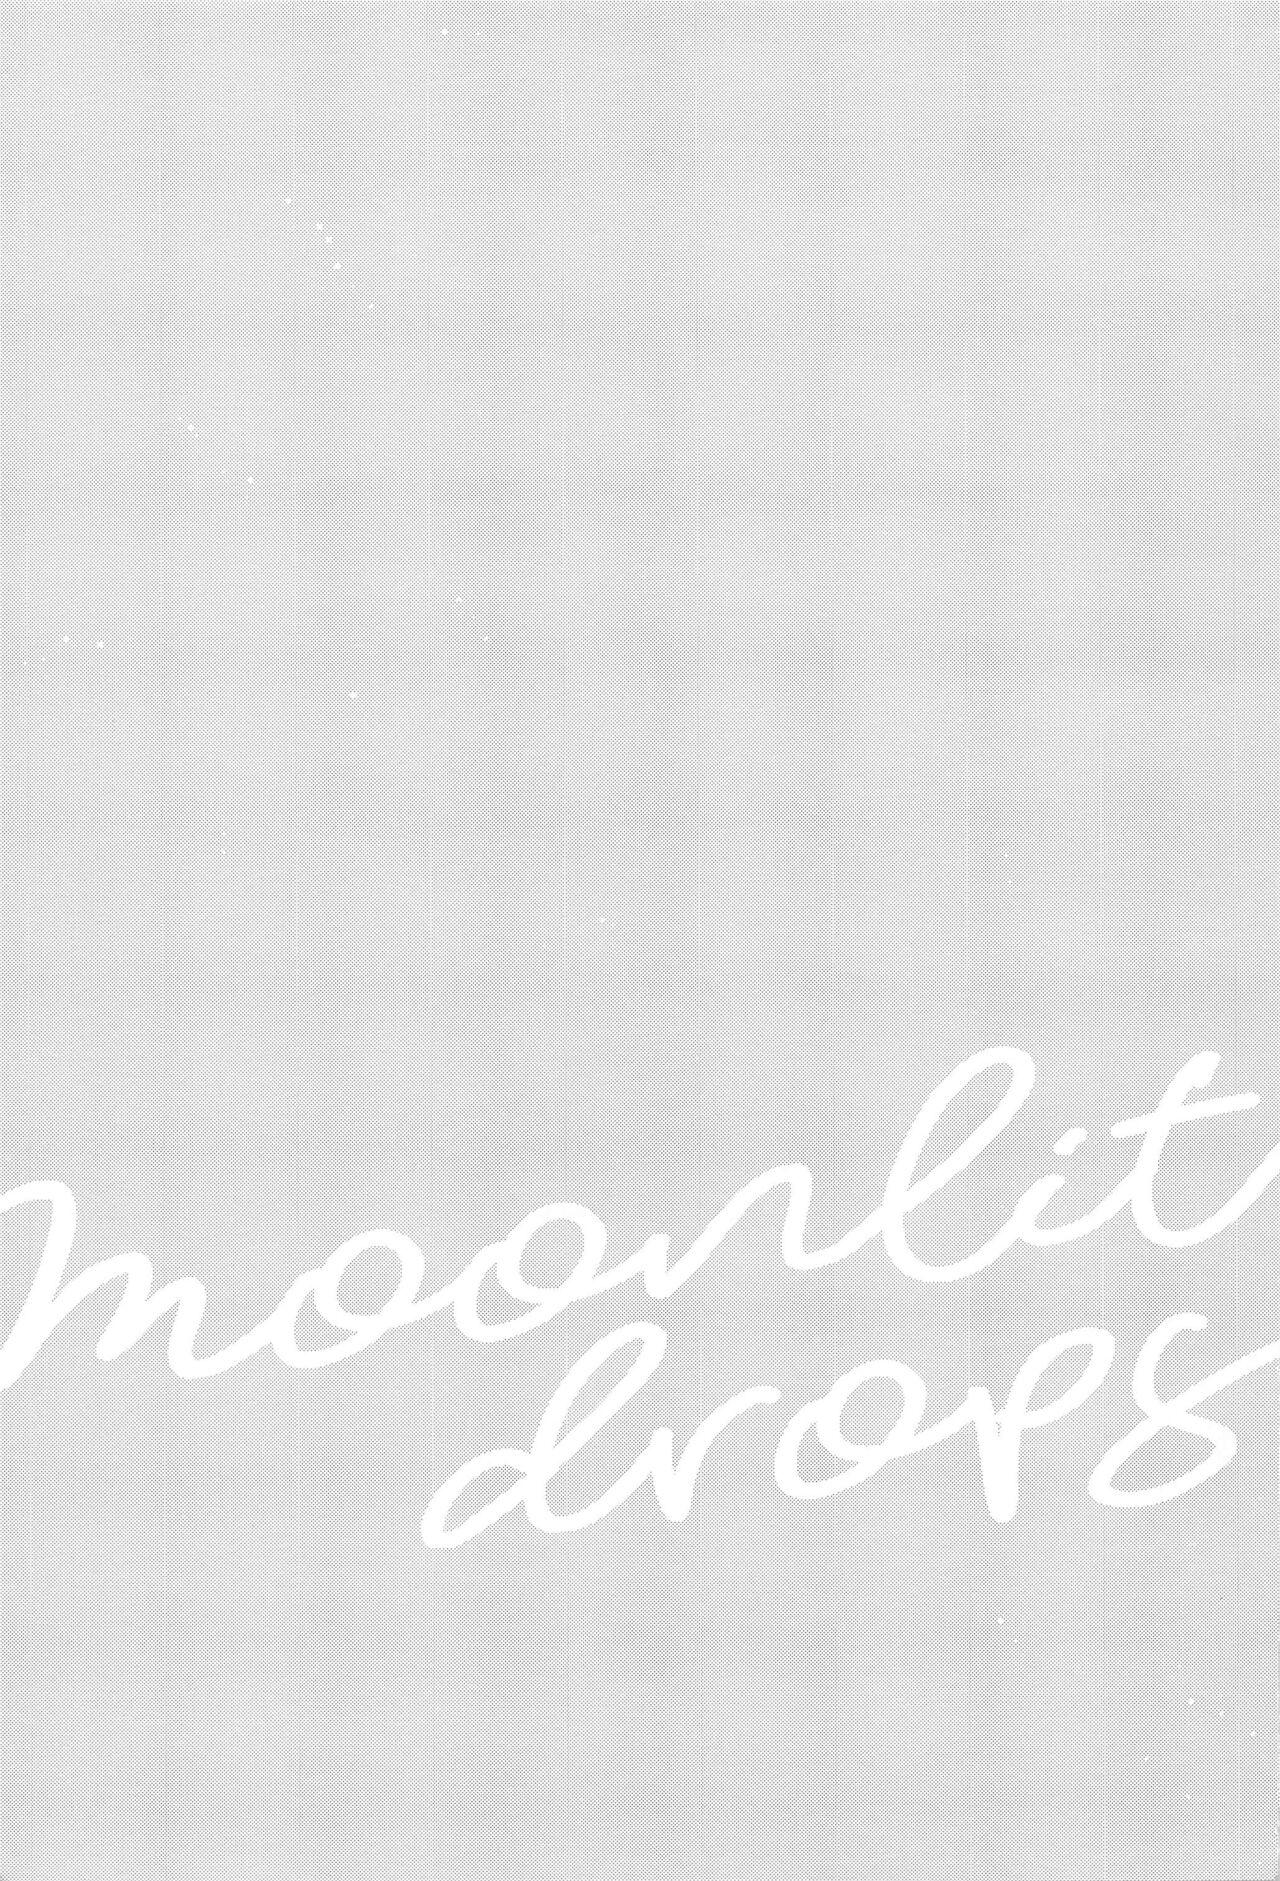 Moonlit drops 57